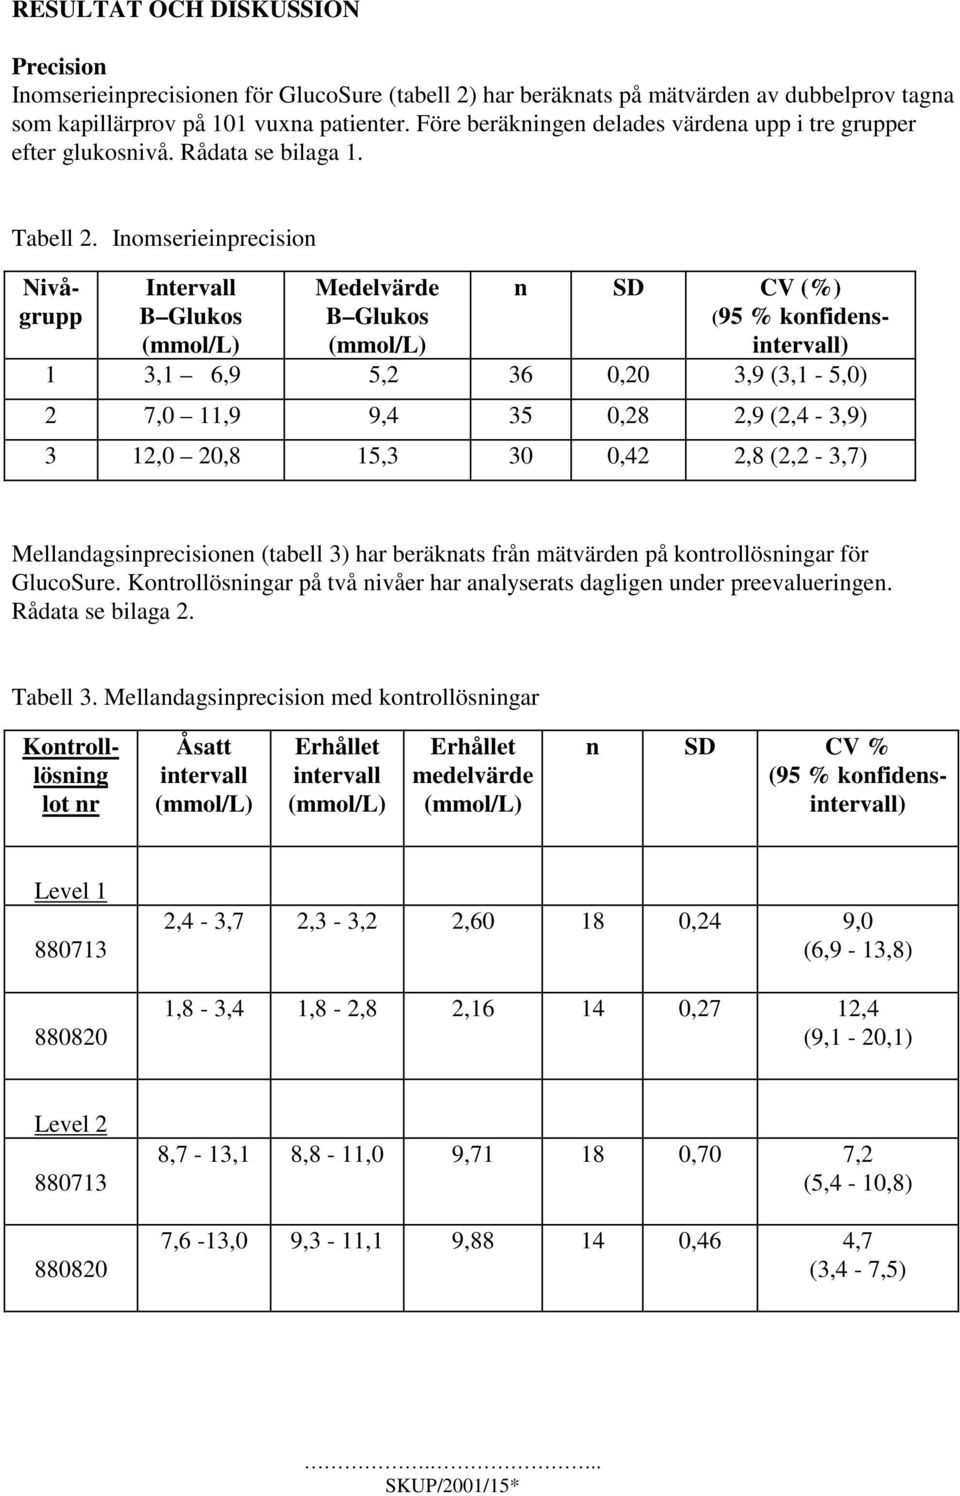 Inomserieinprecision Nivågrupp Intervall B Glukos (mmol/l) Medelvärde B Glukos (mmol/l) n SD CV (%) (95 % konfidensintervall) 1 3,1 6,9 5,2 36 0,20 3,9 (3,1-5,0) 2 7,0 11,9 9,4 35 0,28 2,9 (2,4-3,9)